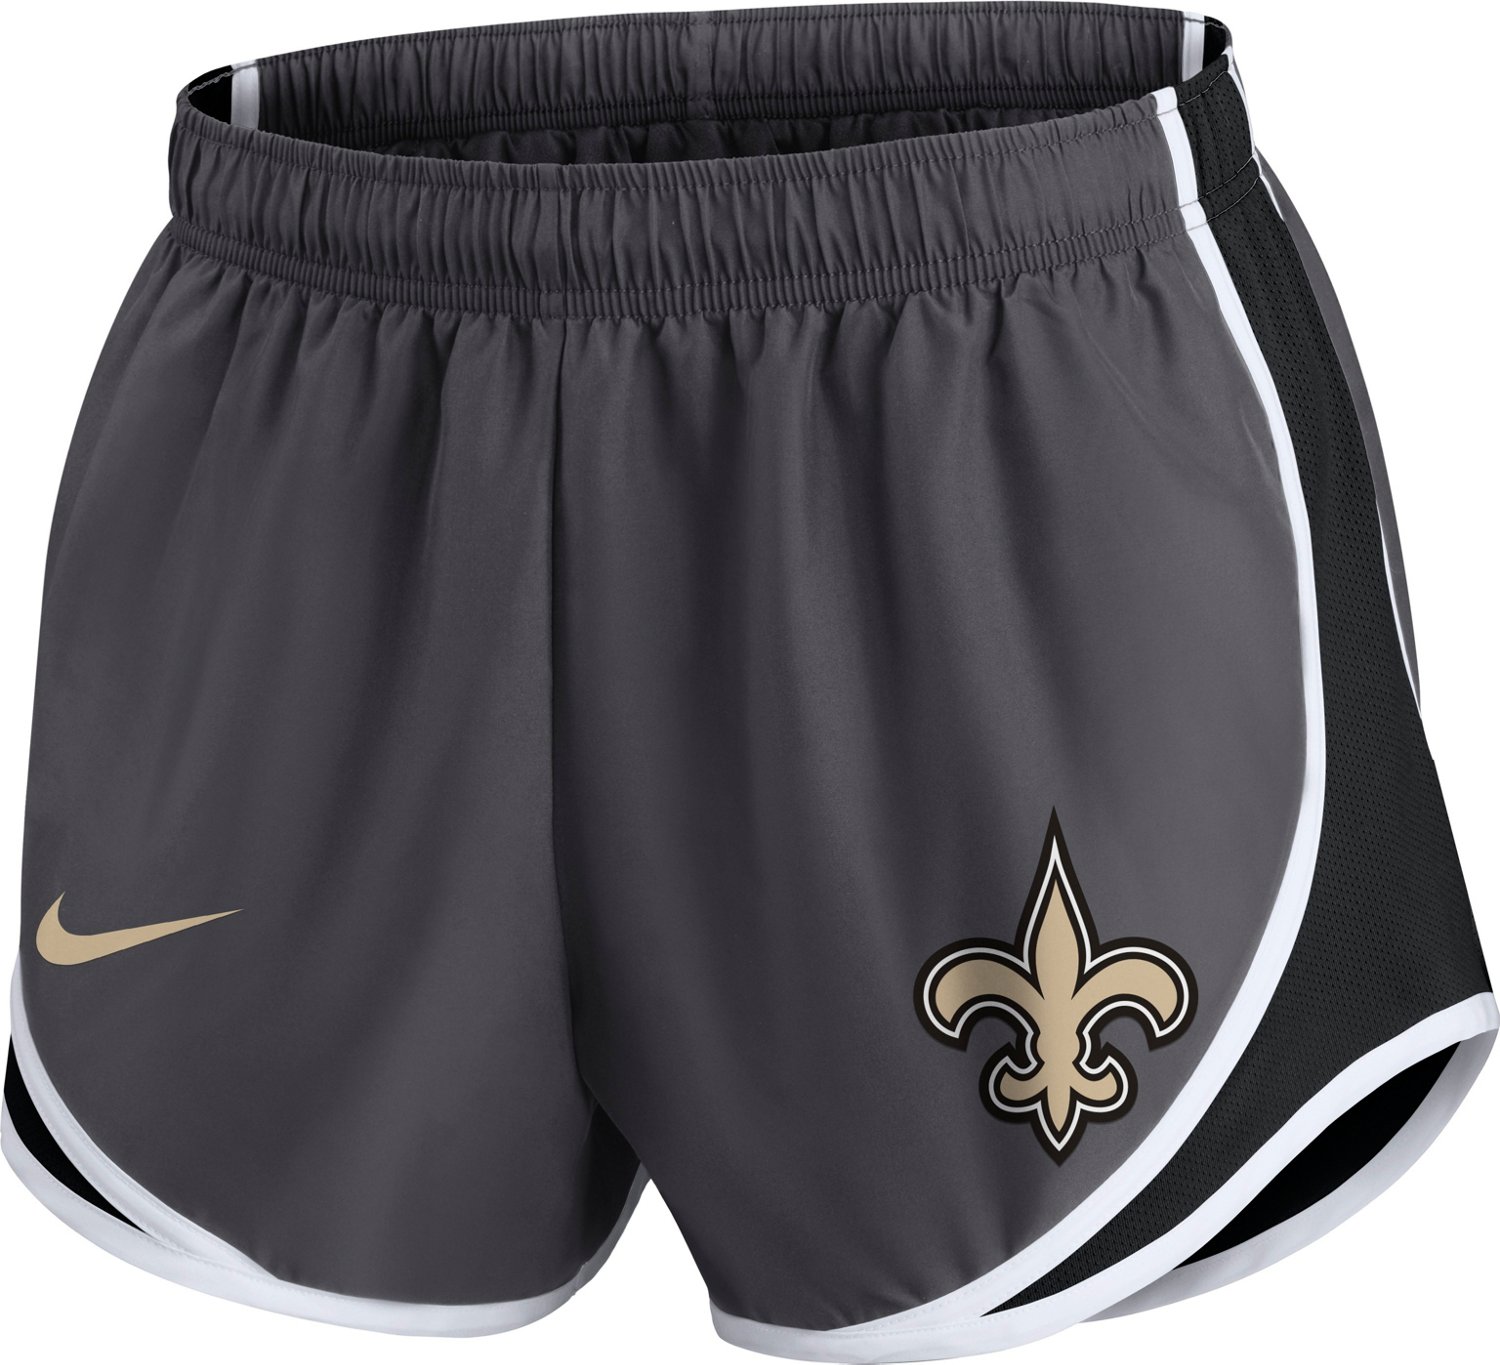 Short Nike Saints de la Nouvelle-Orléans - Femme